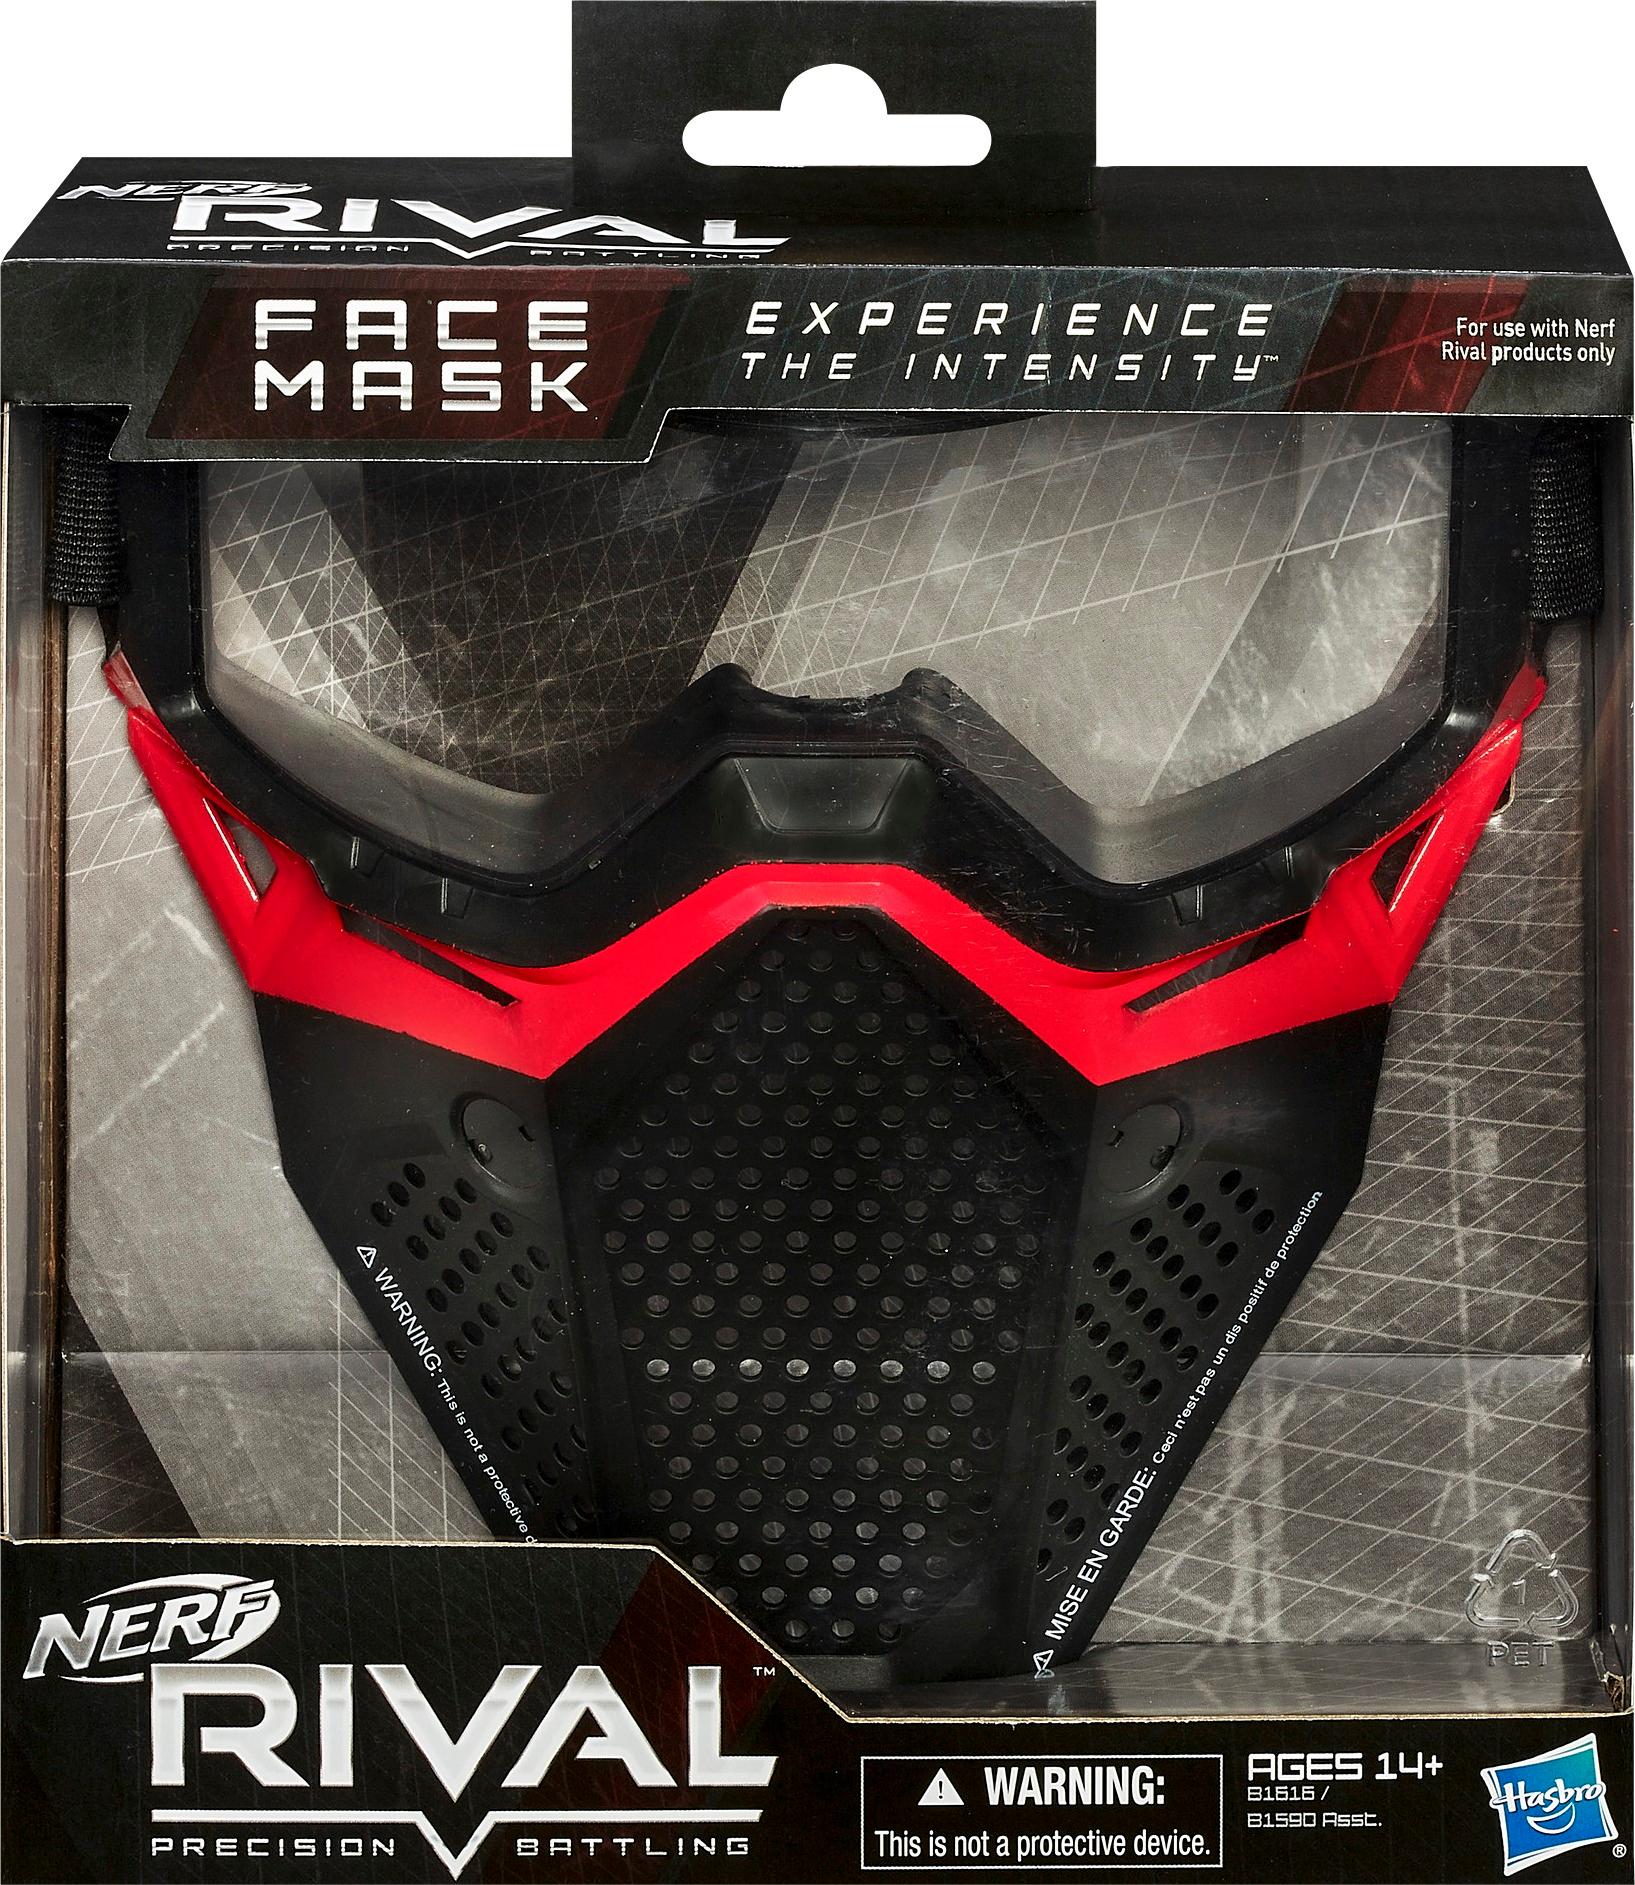 Best Buy: Nerf Hyper Face Mask E8958